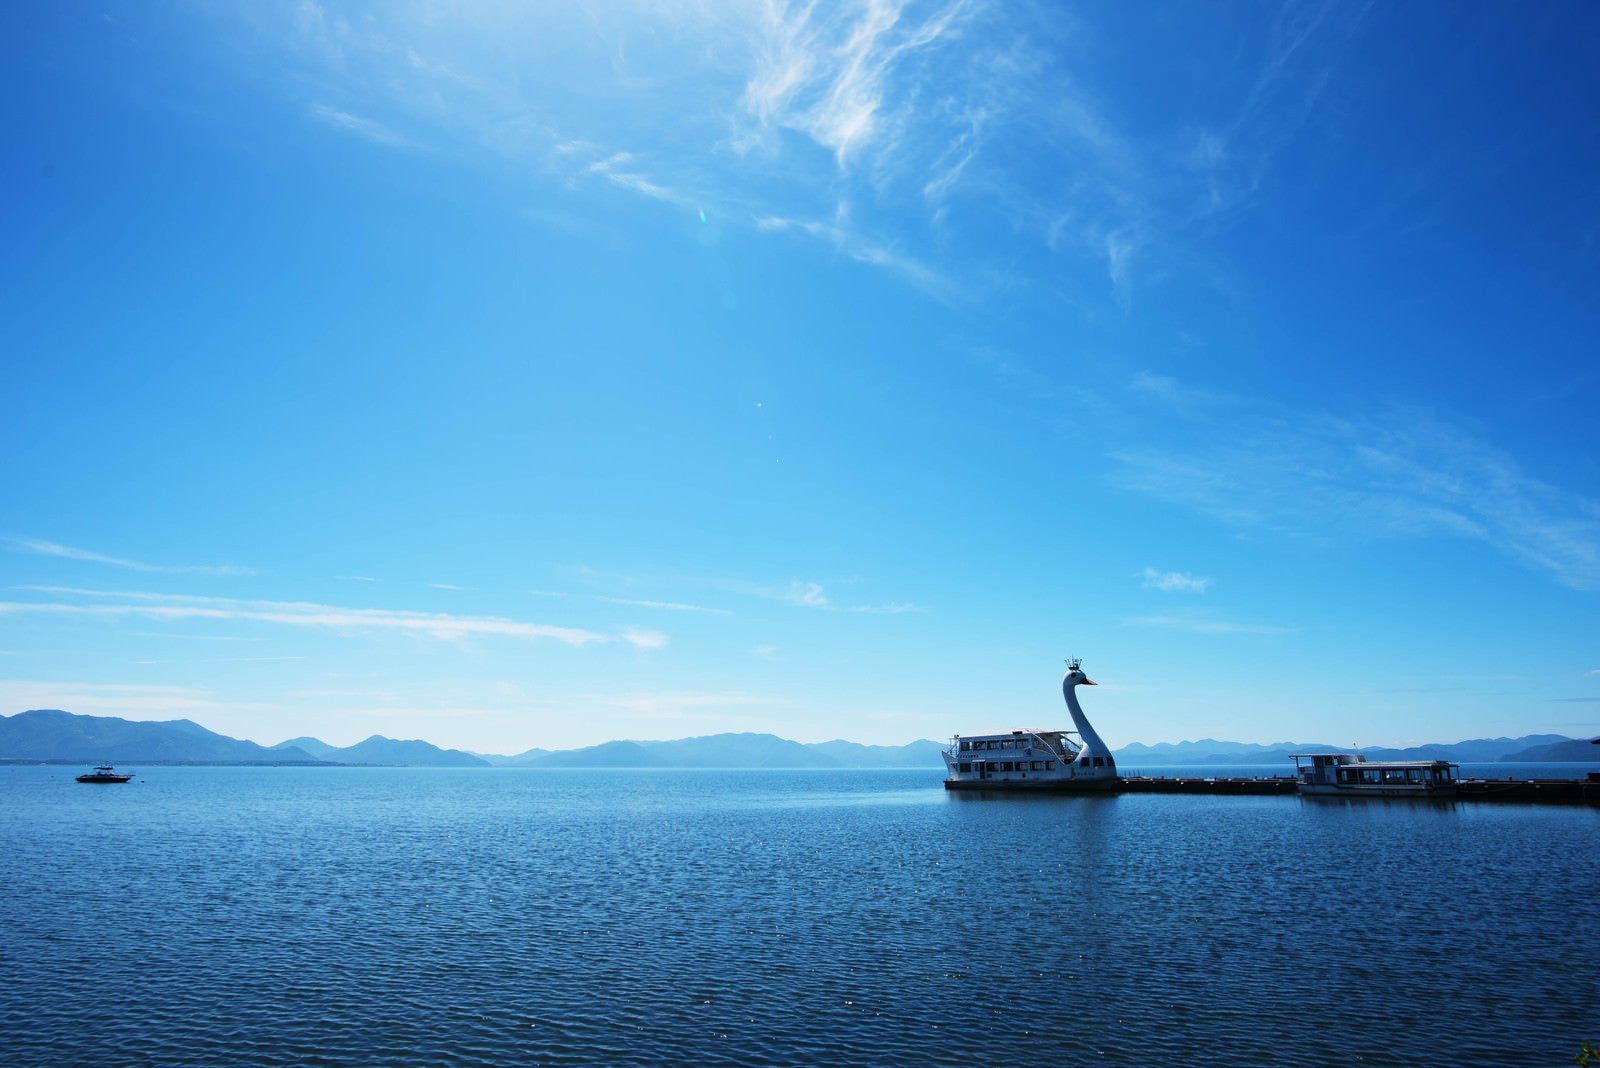 「猪苗代湖の巨大スワンボート」の写真